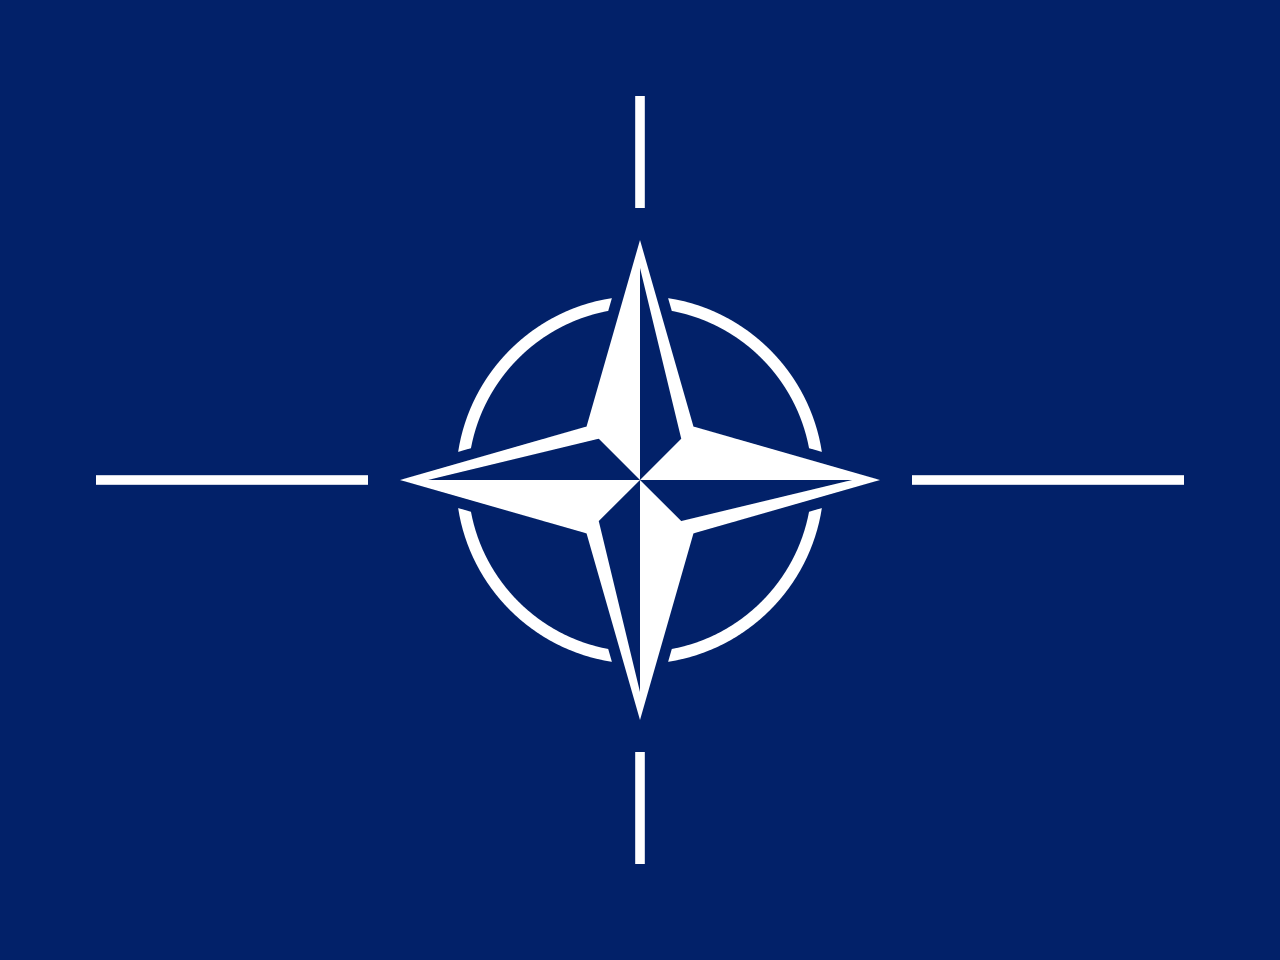 флаг НАТО